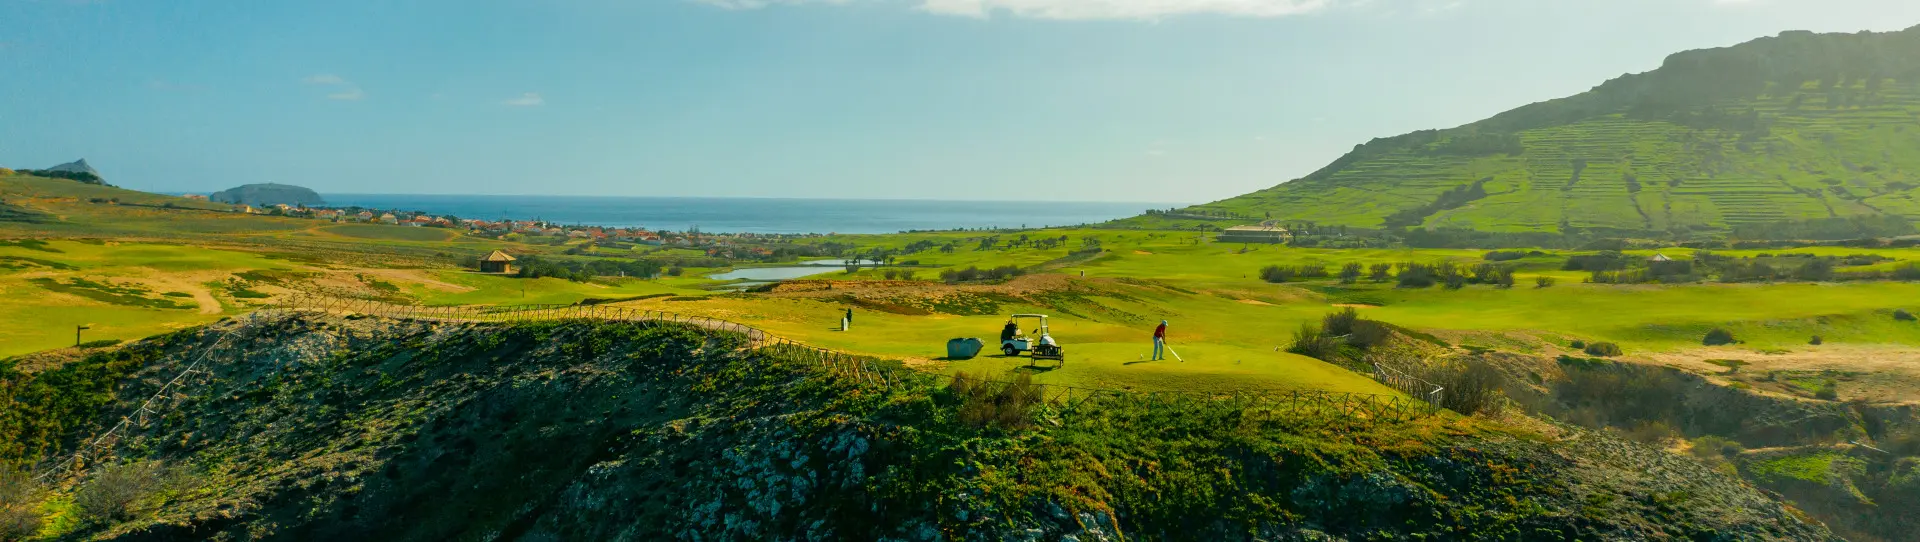 Portugal golf holidays - Porto Santo Golf Course 2 rounds - Photo 2